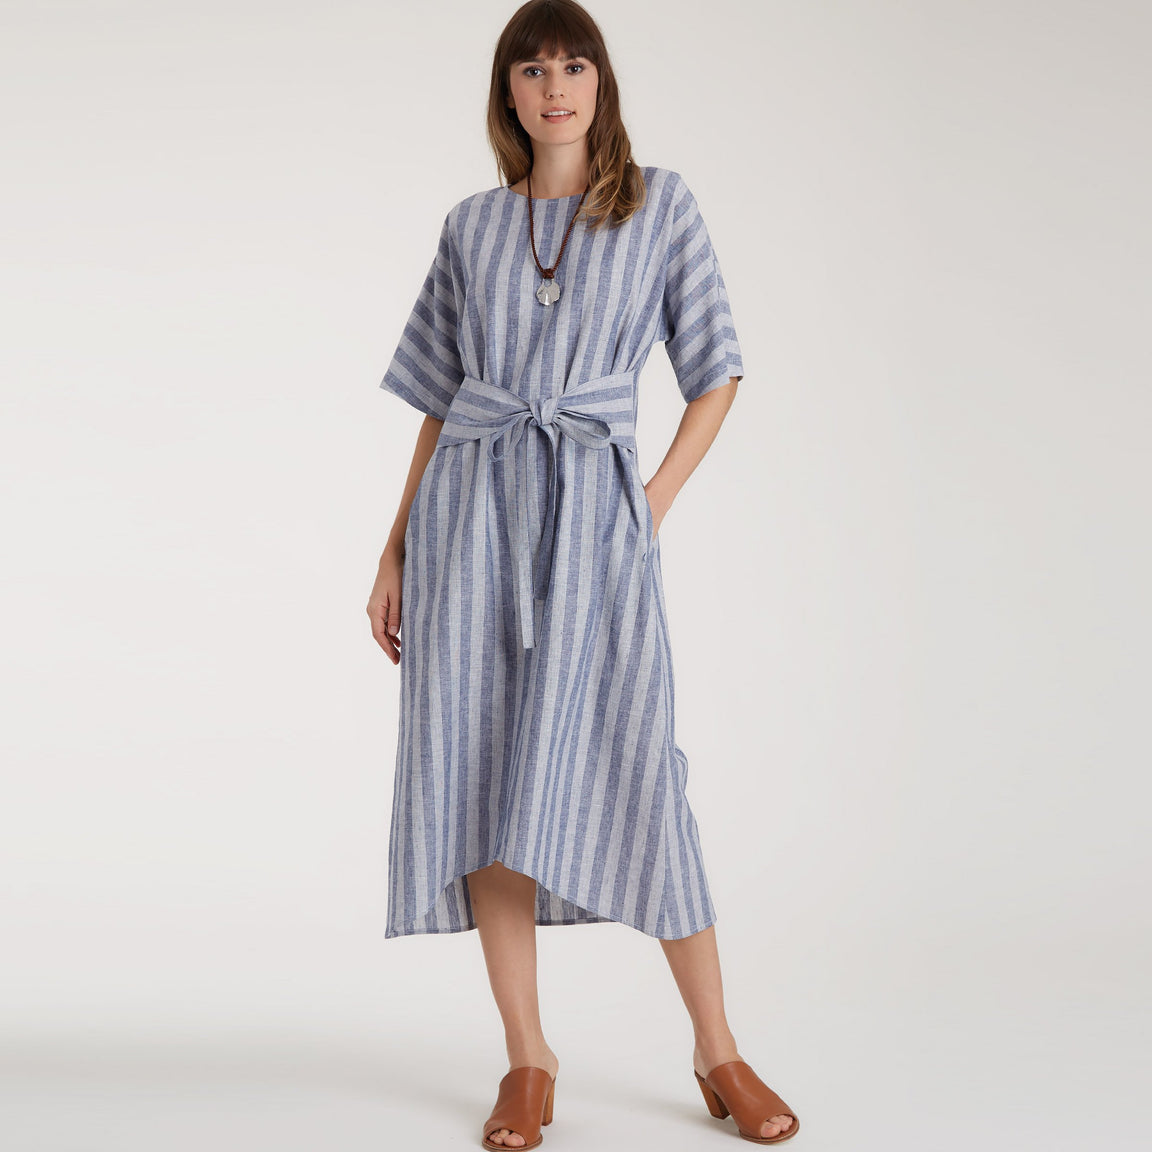 Dress Patterns | Jaycotts — Page 7 — jaycotts.co.uk - Sewing Supplies